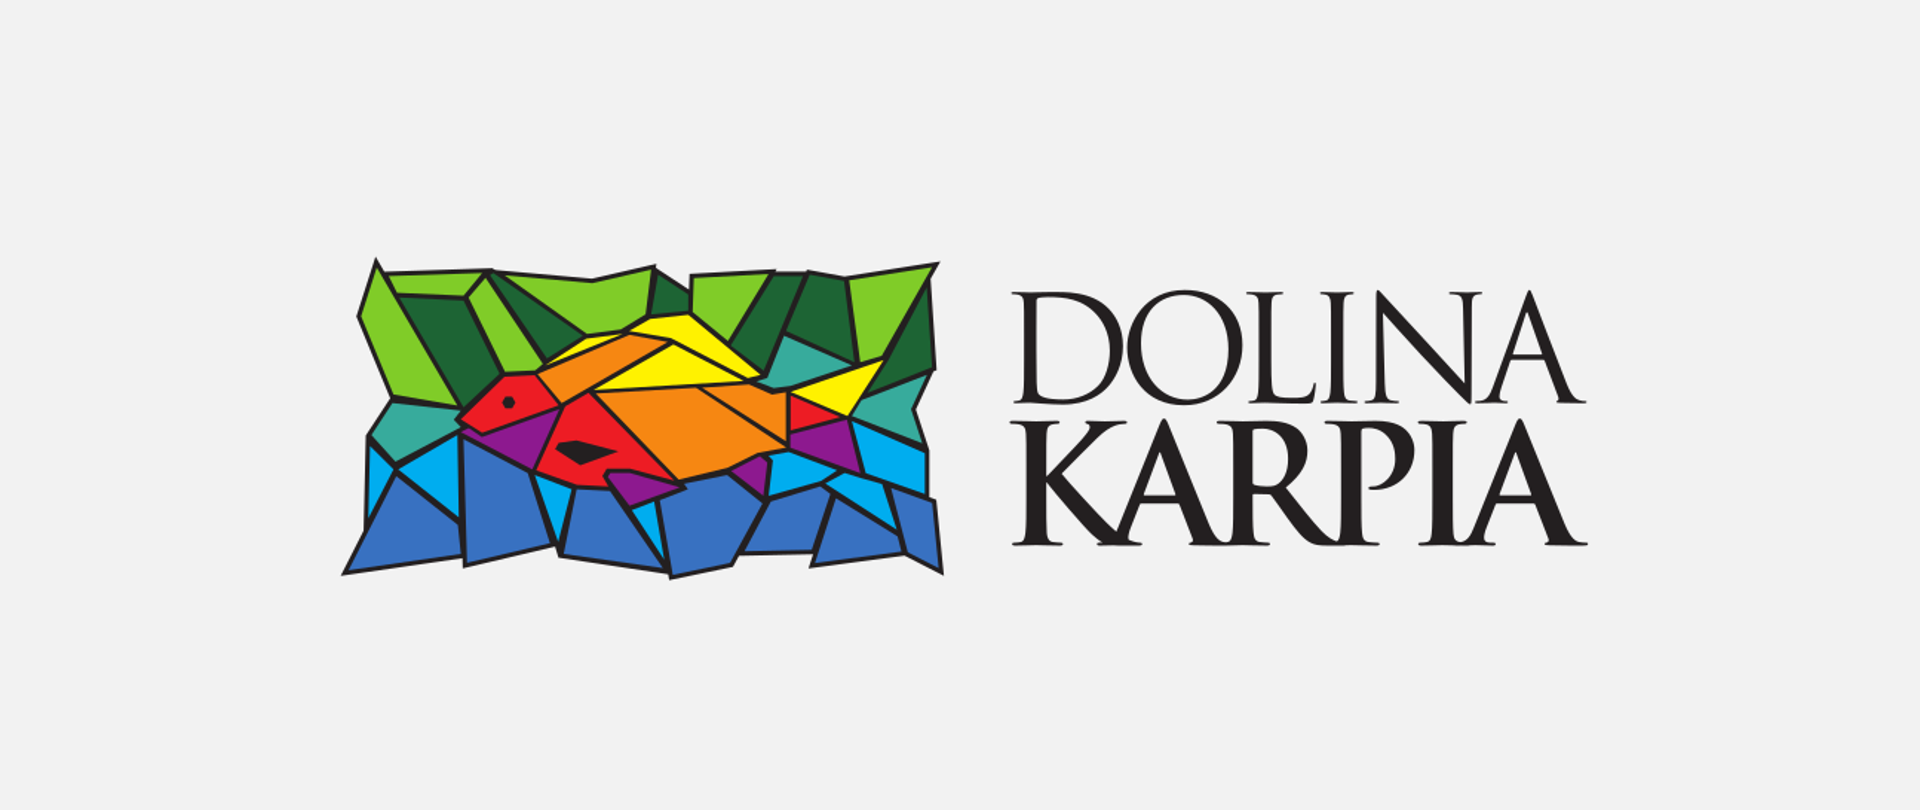 logo Doliny Karpia (witrażowy, wielobarwny symbol karpia wpisany w otoczenie o kolorach wody i roślinności, nawiązujących do walorów przyrodniczych regionu)